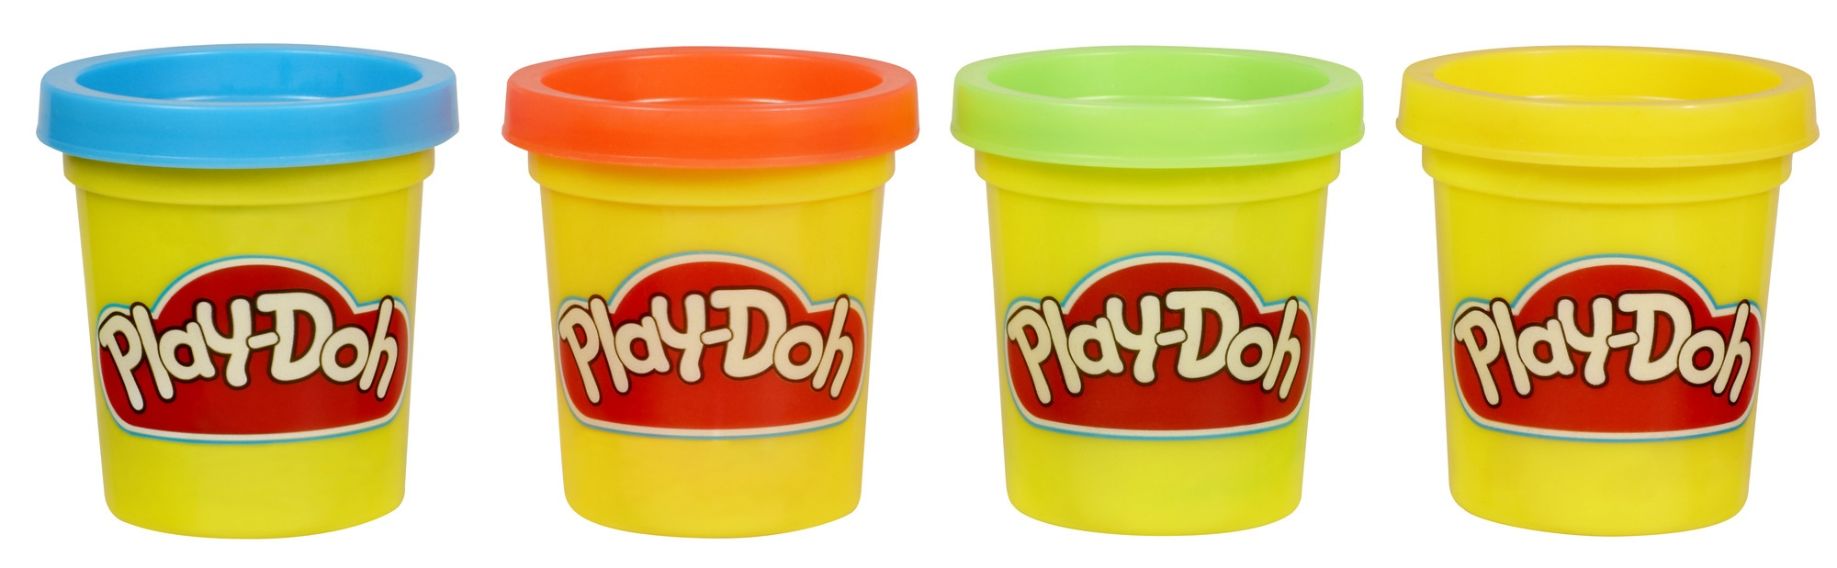 Play-Doh Mini 4-Pack 23241 v2 - Play-Doh